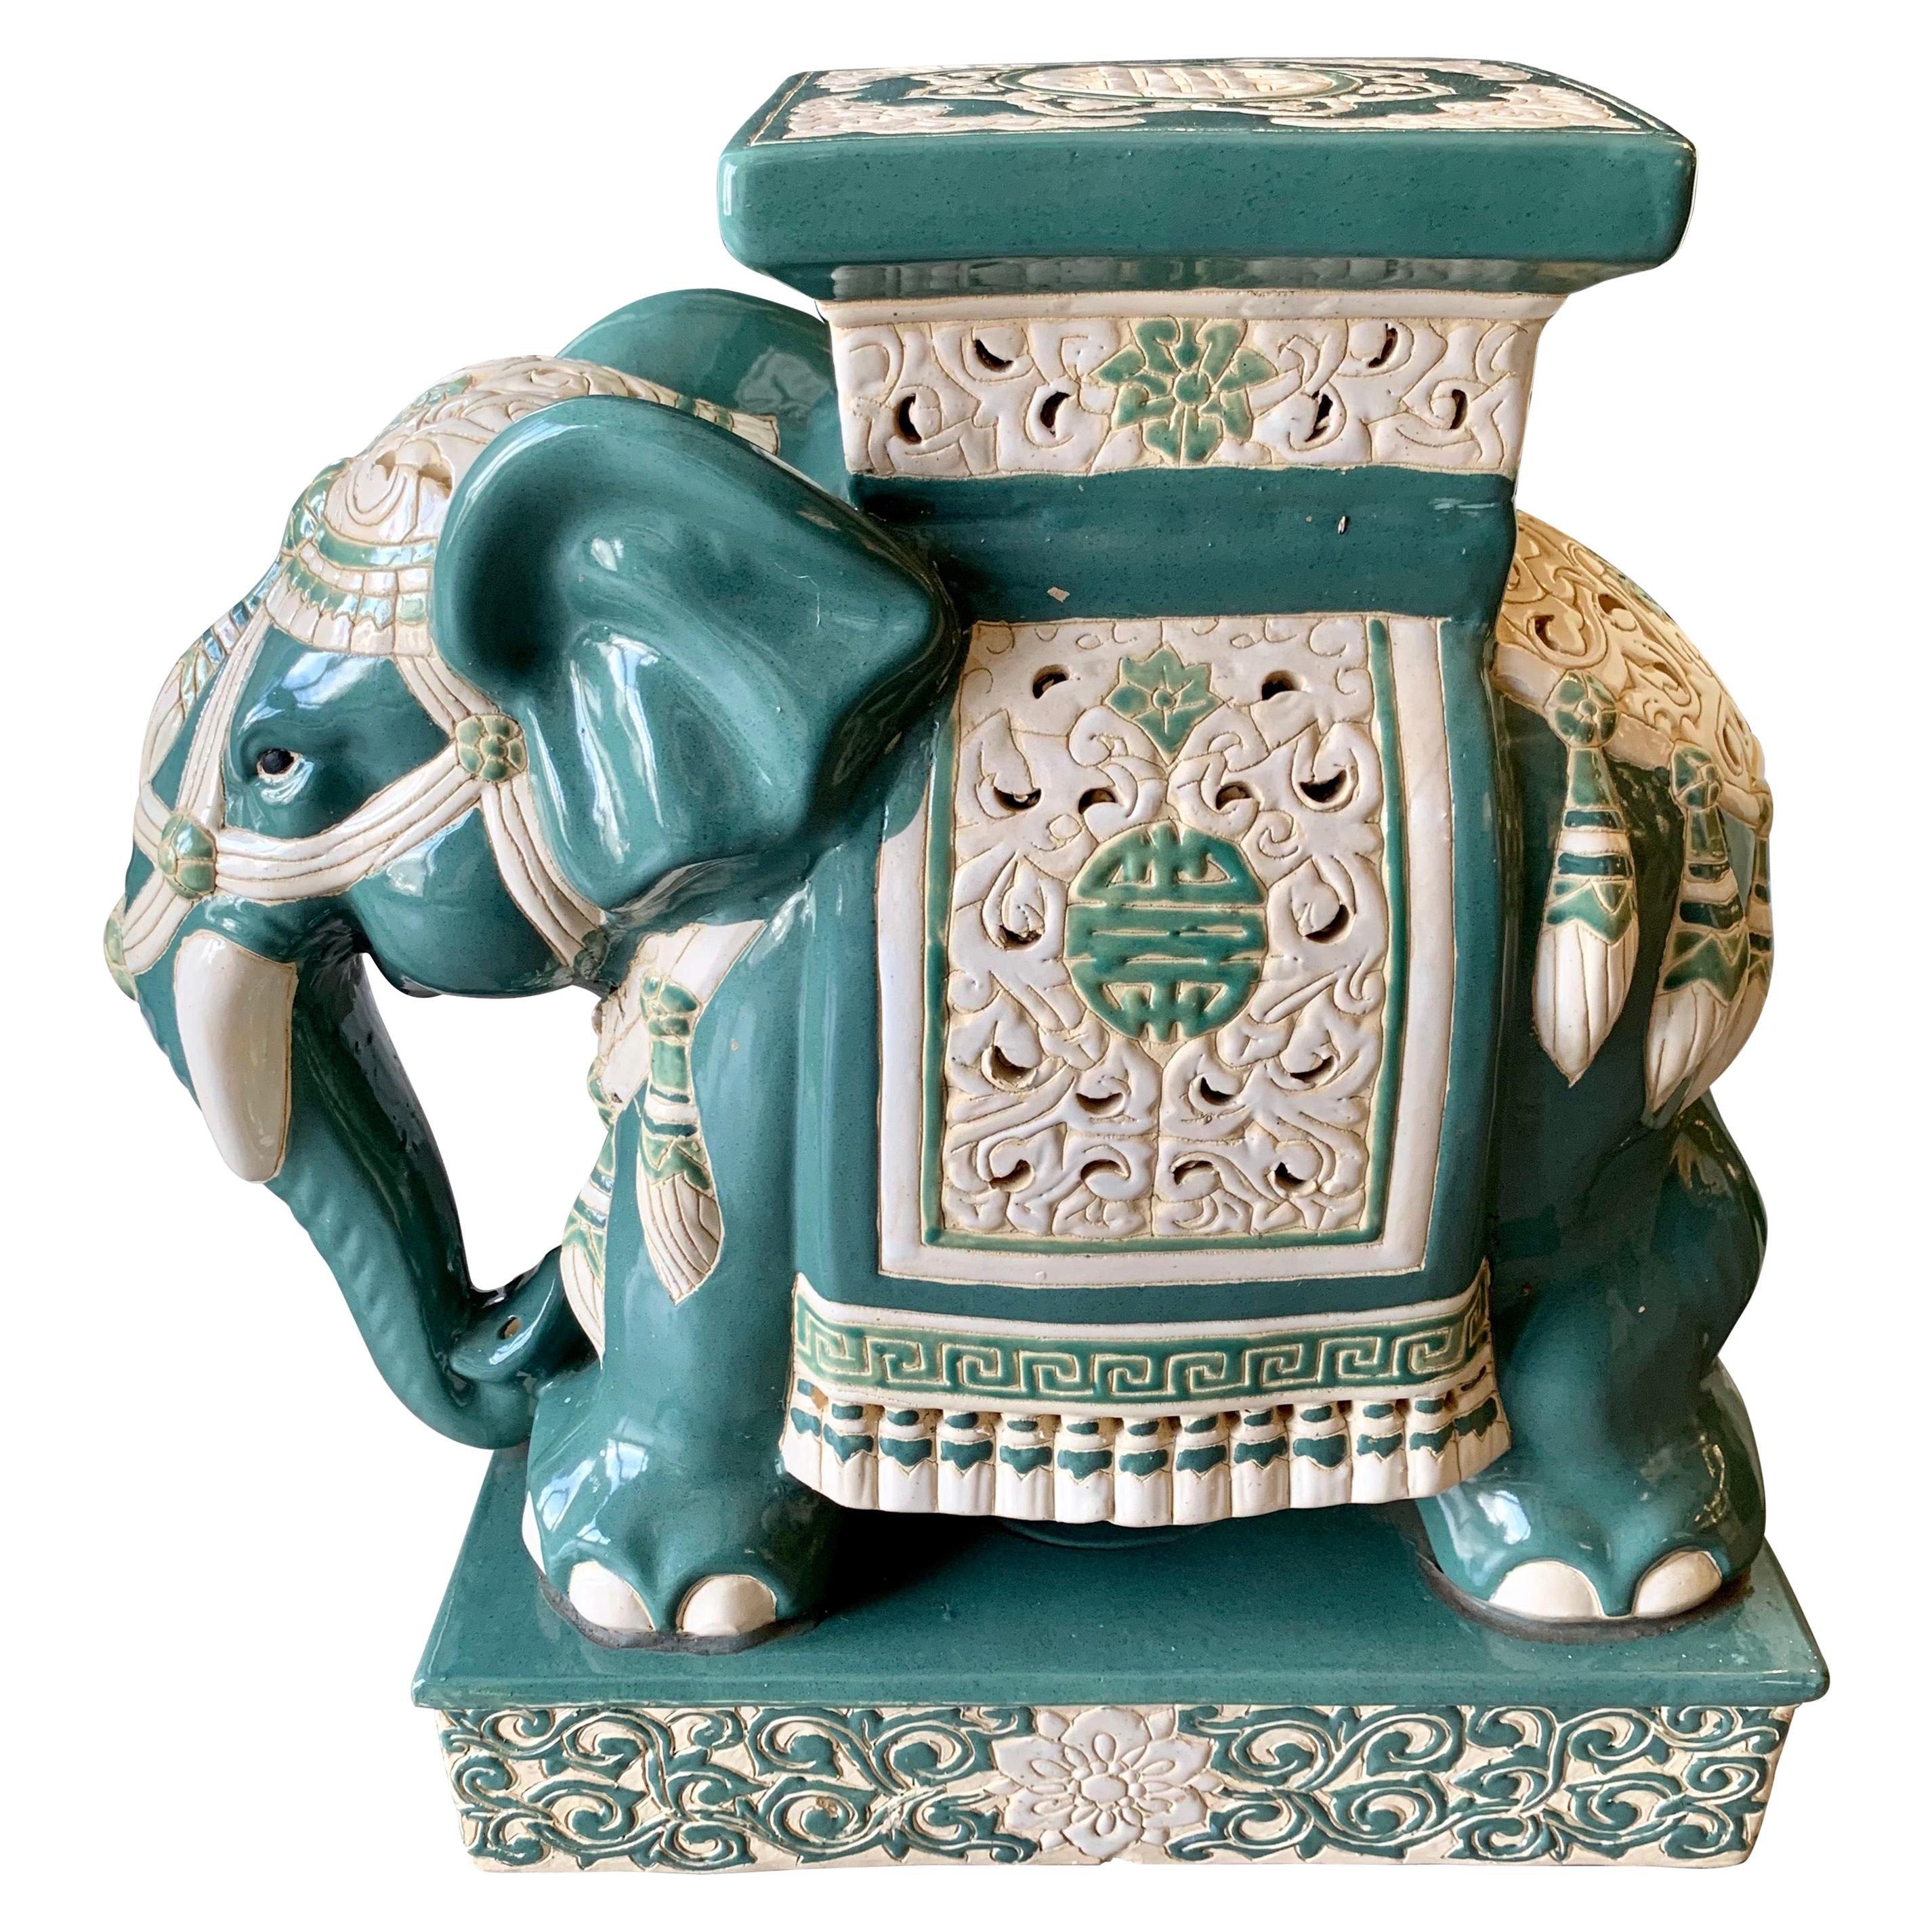 Chinese Porcelain Elephant Garden Stool Seat